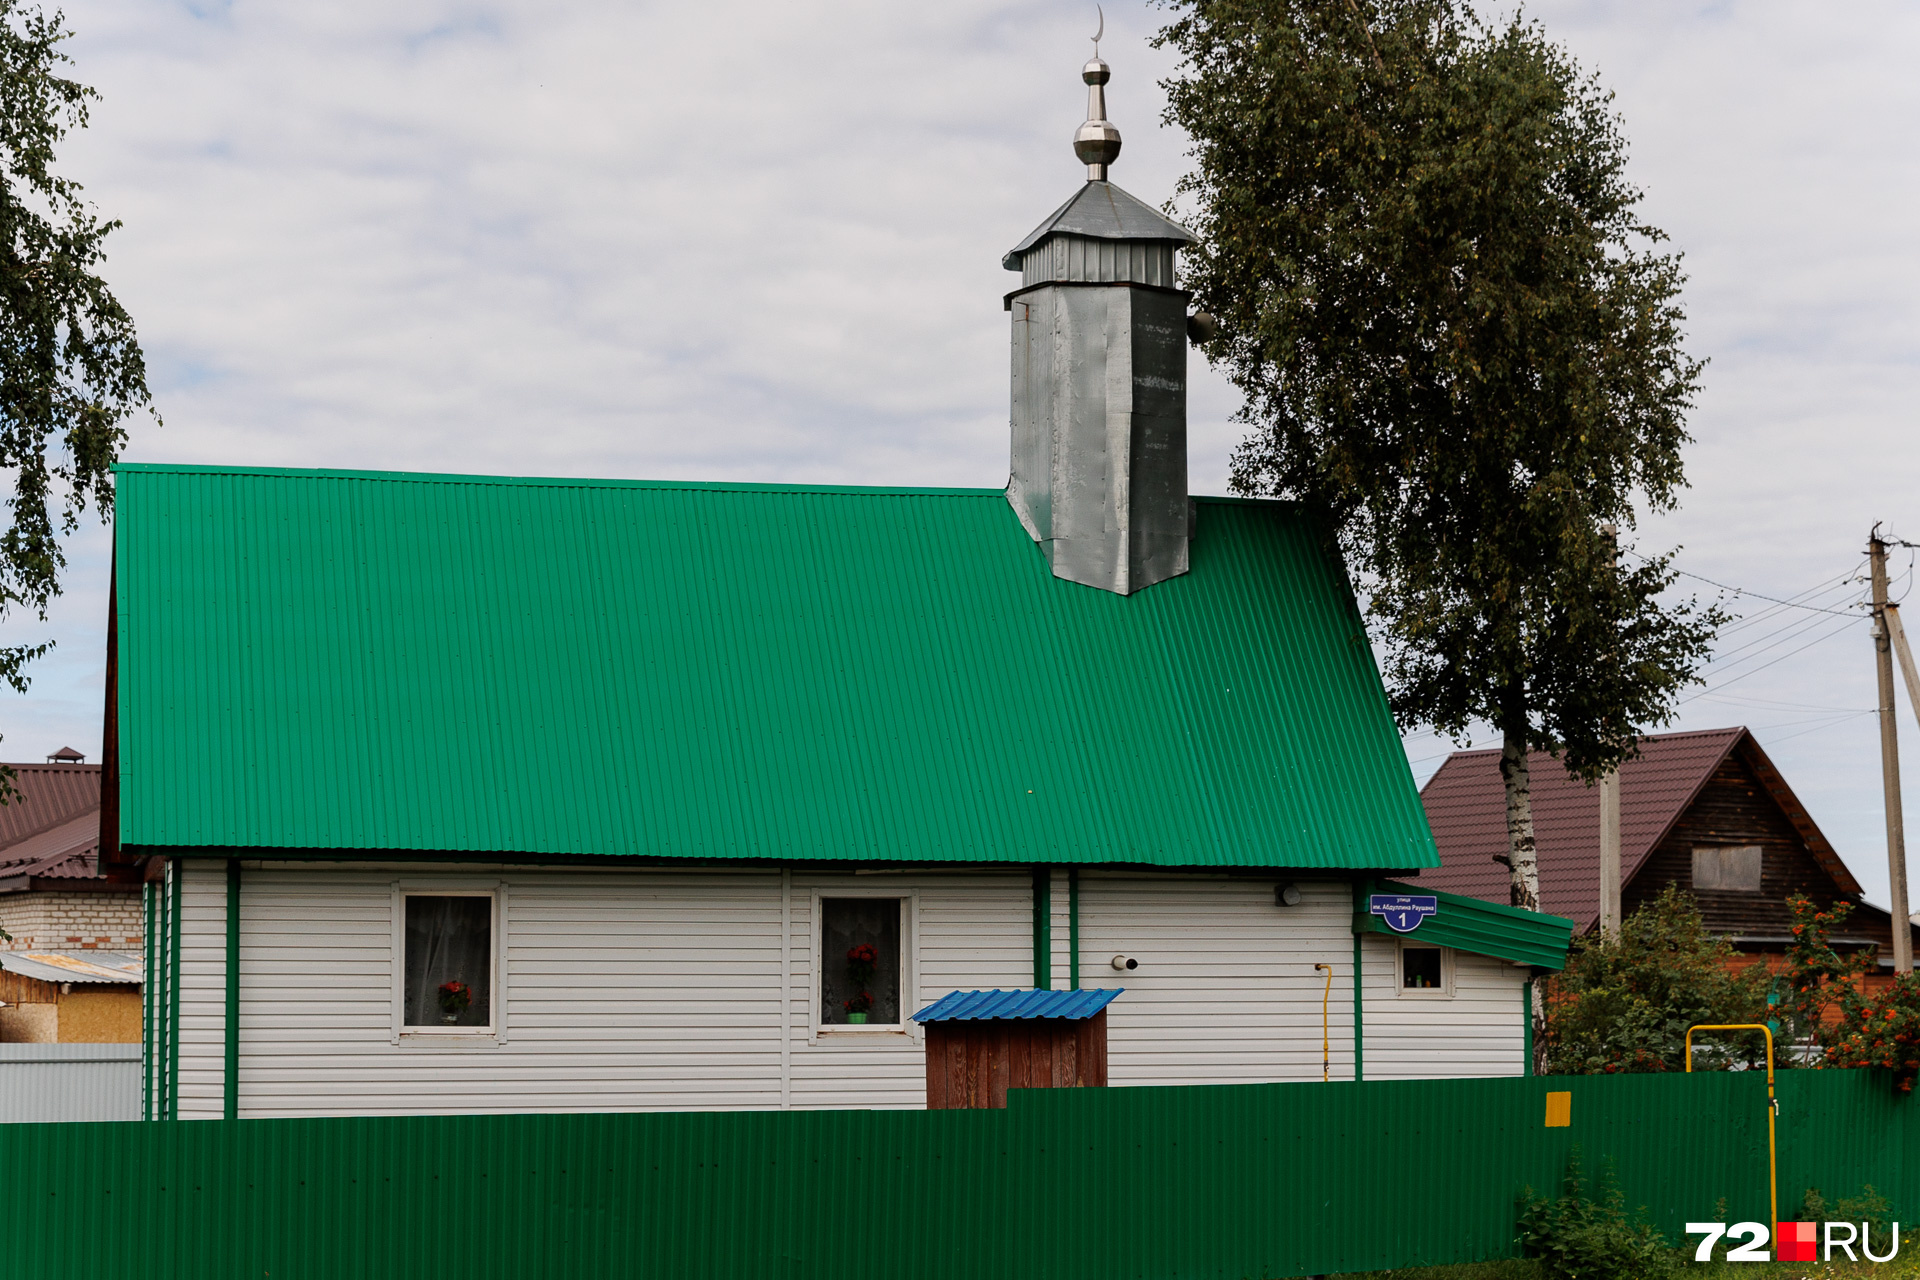 В деревне есть мечеть. Пока не увидишь возвышающийся над крышей полумесяц, сразу и не поймешь, что это религиозный объект. Дом крохотный, но аккуратный, с ухоженной территорией